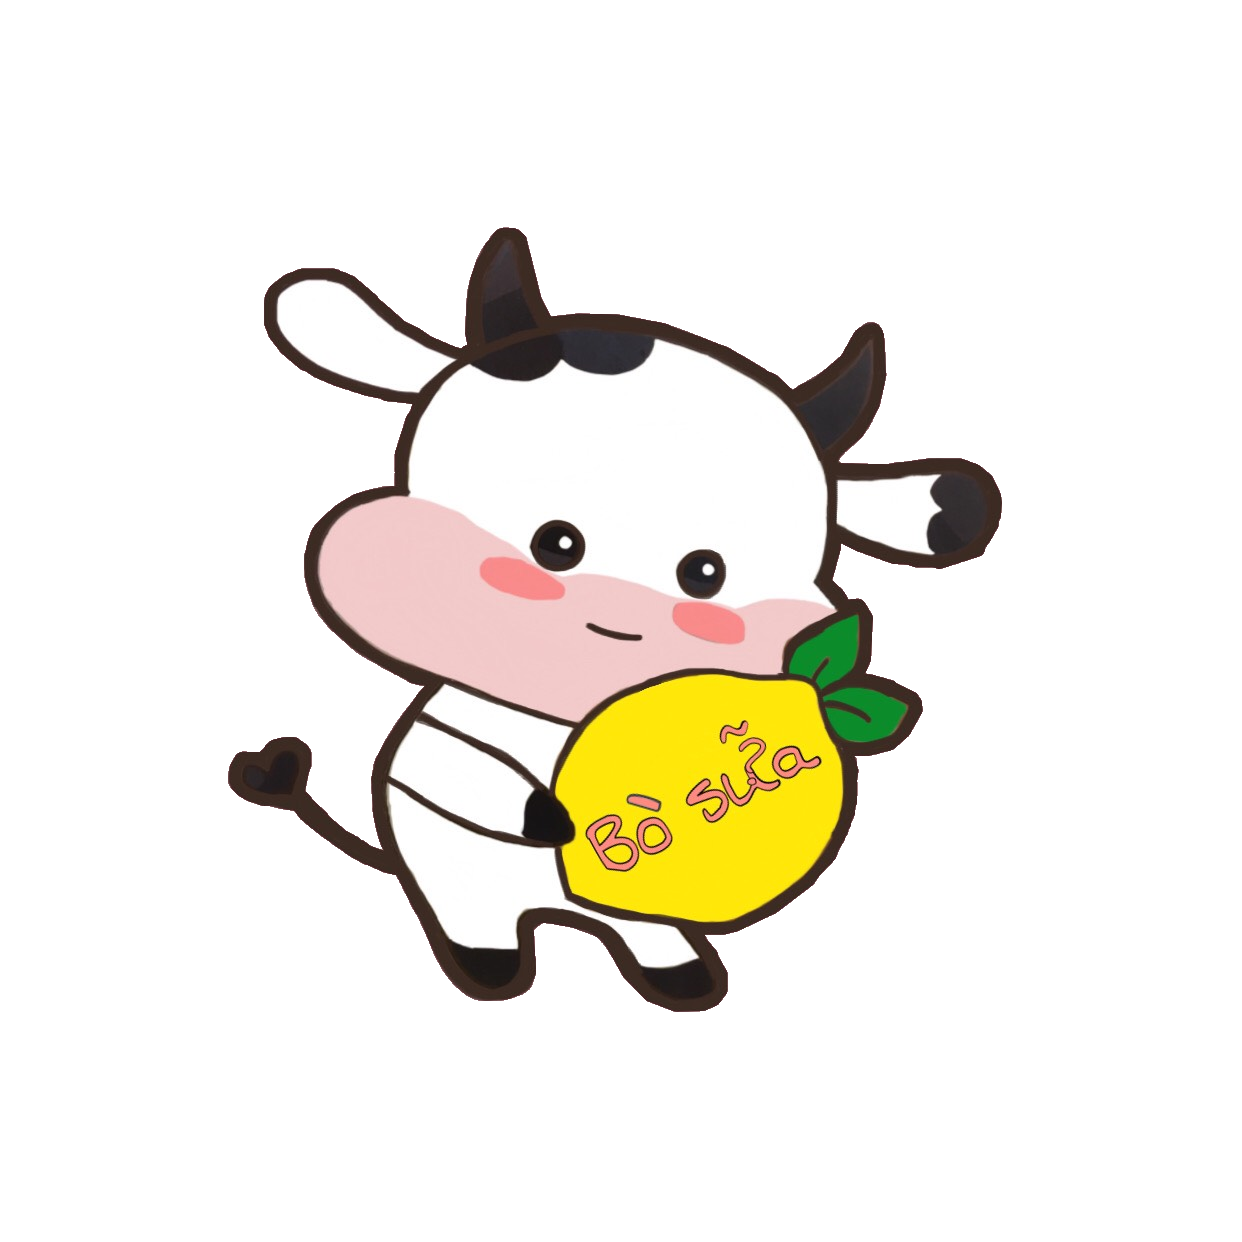 Sticker Washi Bò Sữa chibi: Nếu bạn đang tìm kiếm những sticker dễ thương để trang trí đồ dùng cá nhân thì Sticker Washi Bò Sữa chibi chính là sự lựa chọn hoàn hảo. Với thiết kế độc đáo và chất lượng tốt, chúng tôi tin rằng sản phẩm sẽ giúp bạn thể hiện được cá tính riêng của mình.